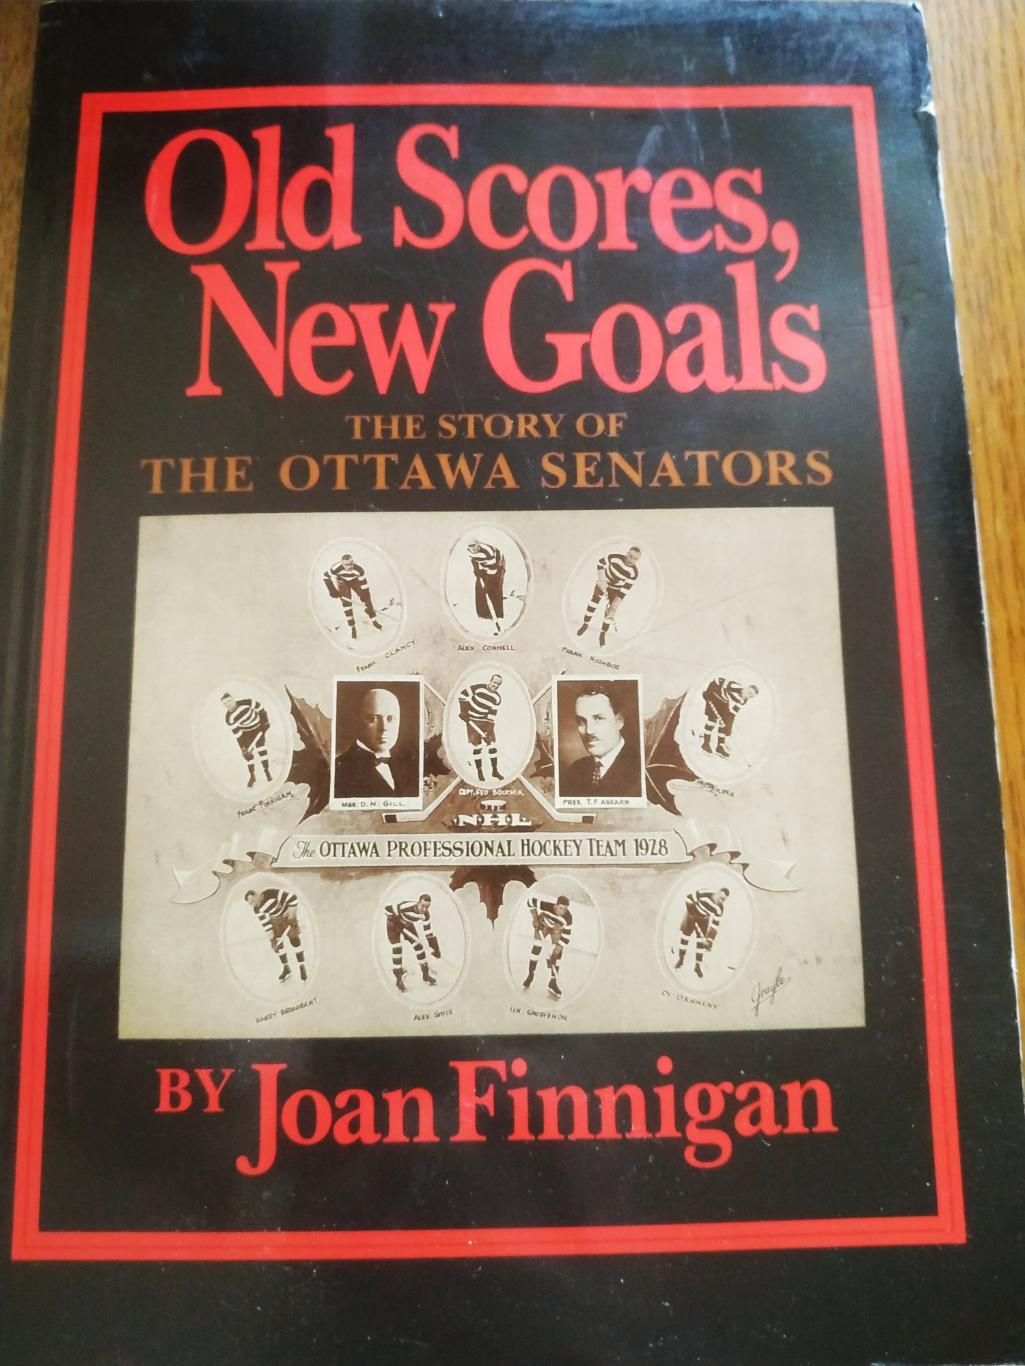 ХОККЕЙ КНИГА НХЛ 1992 OLD SCORES NEW GOAL THE STORY OF THE OTTAWA SENATORS